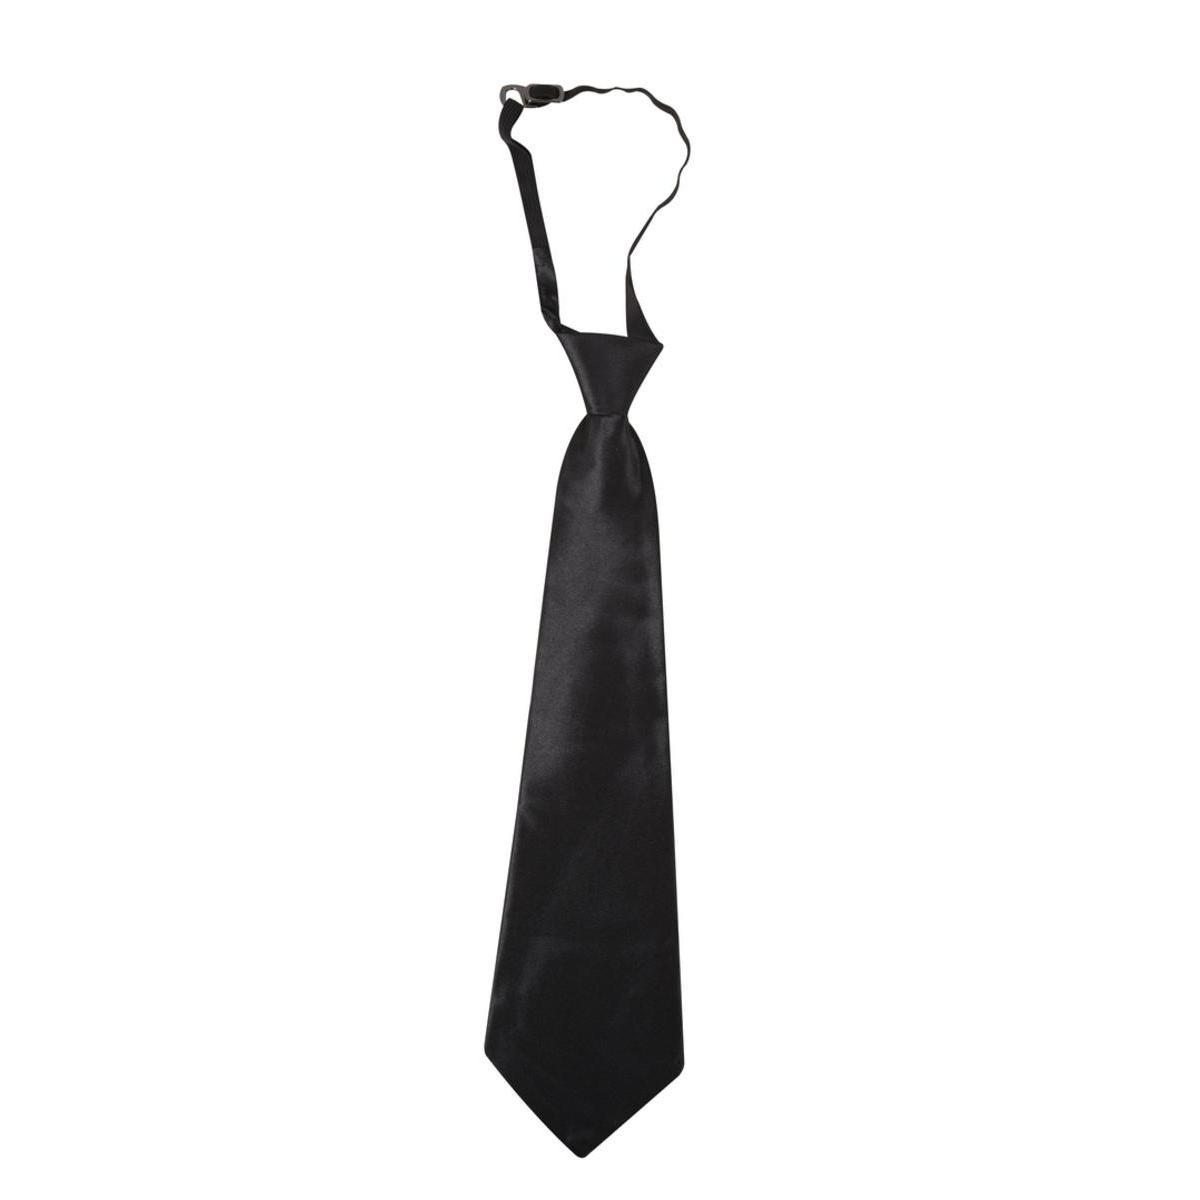 Cravate à élastique en polyester - 40 x 9 cm - Noir